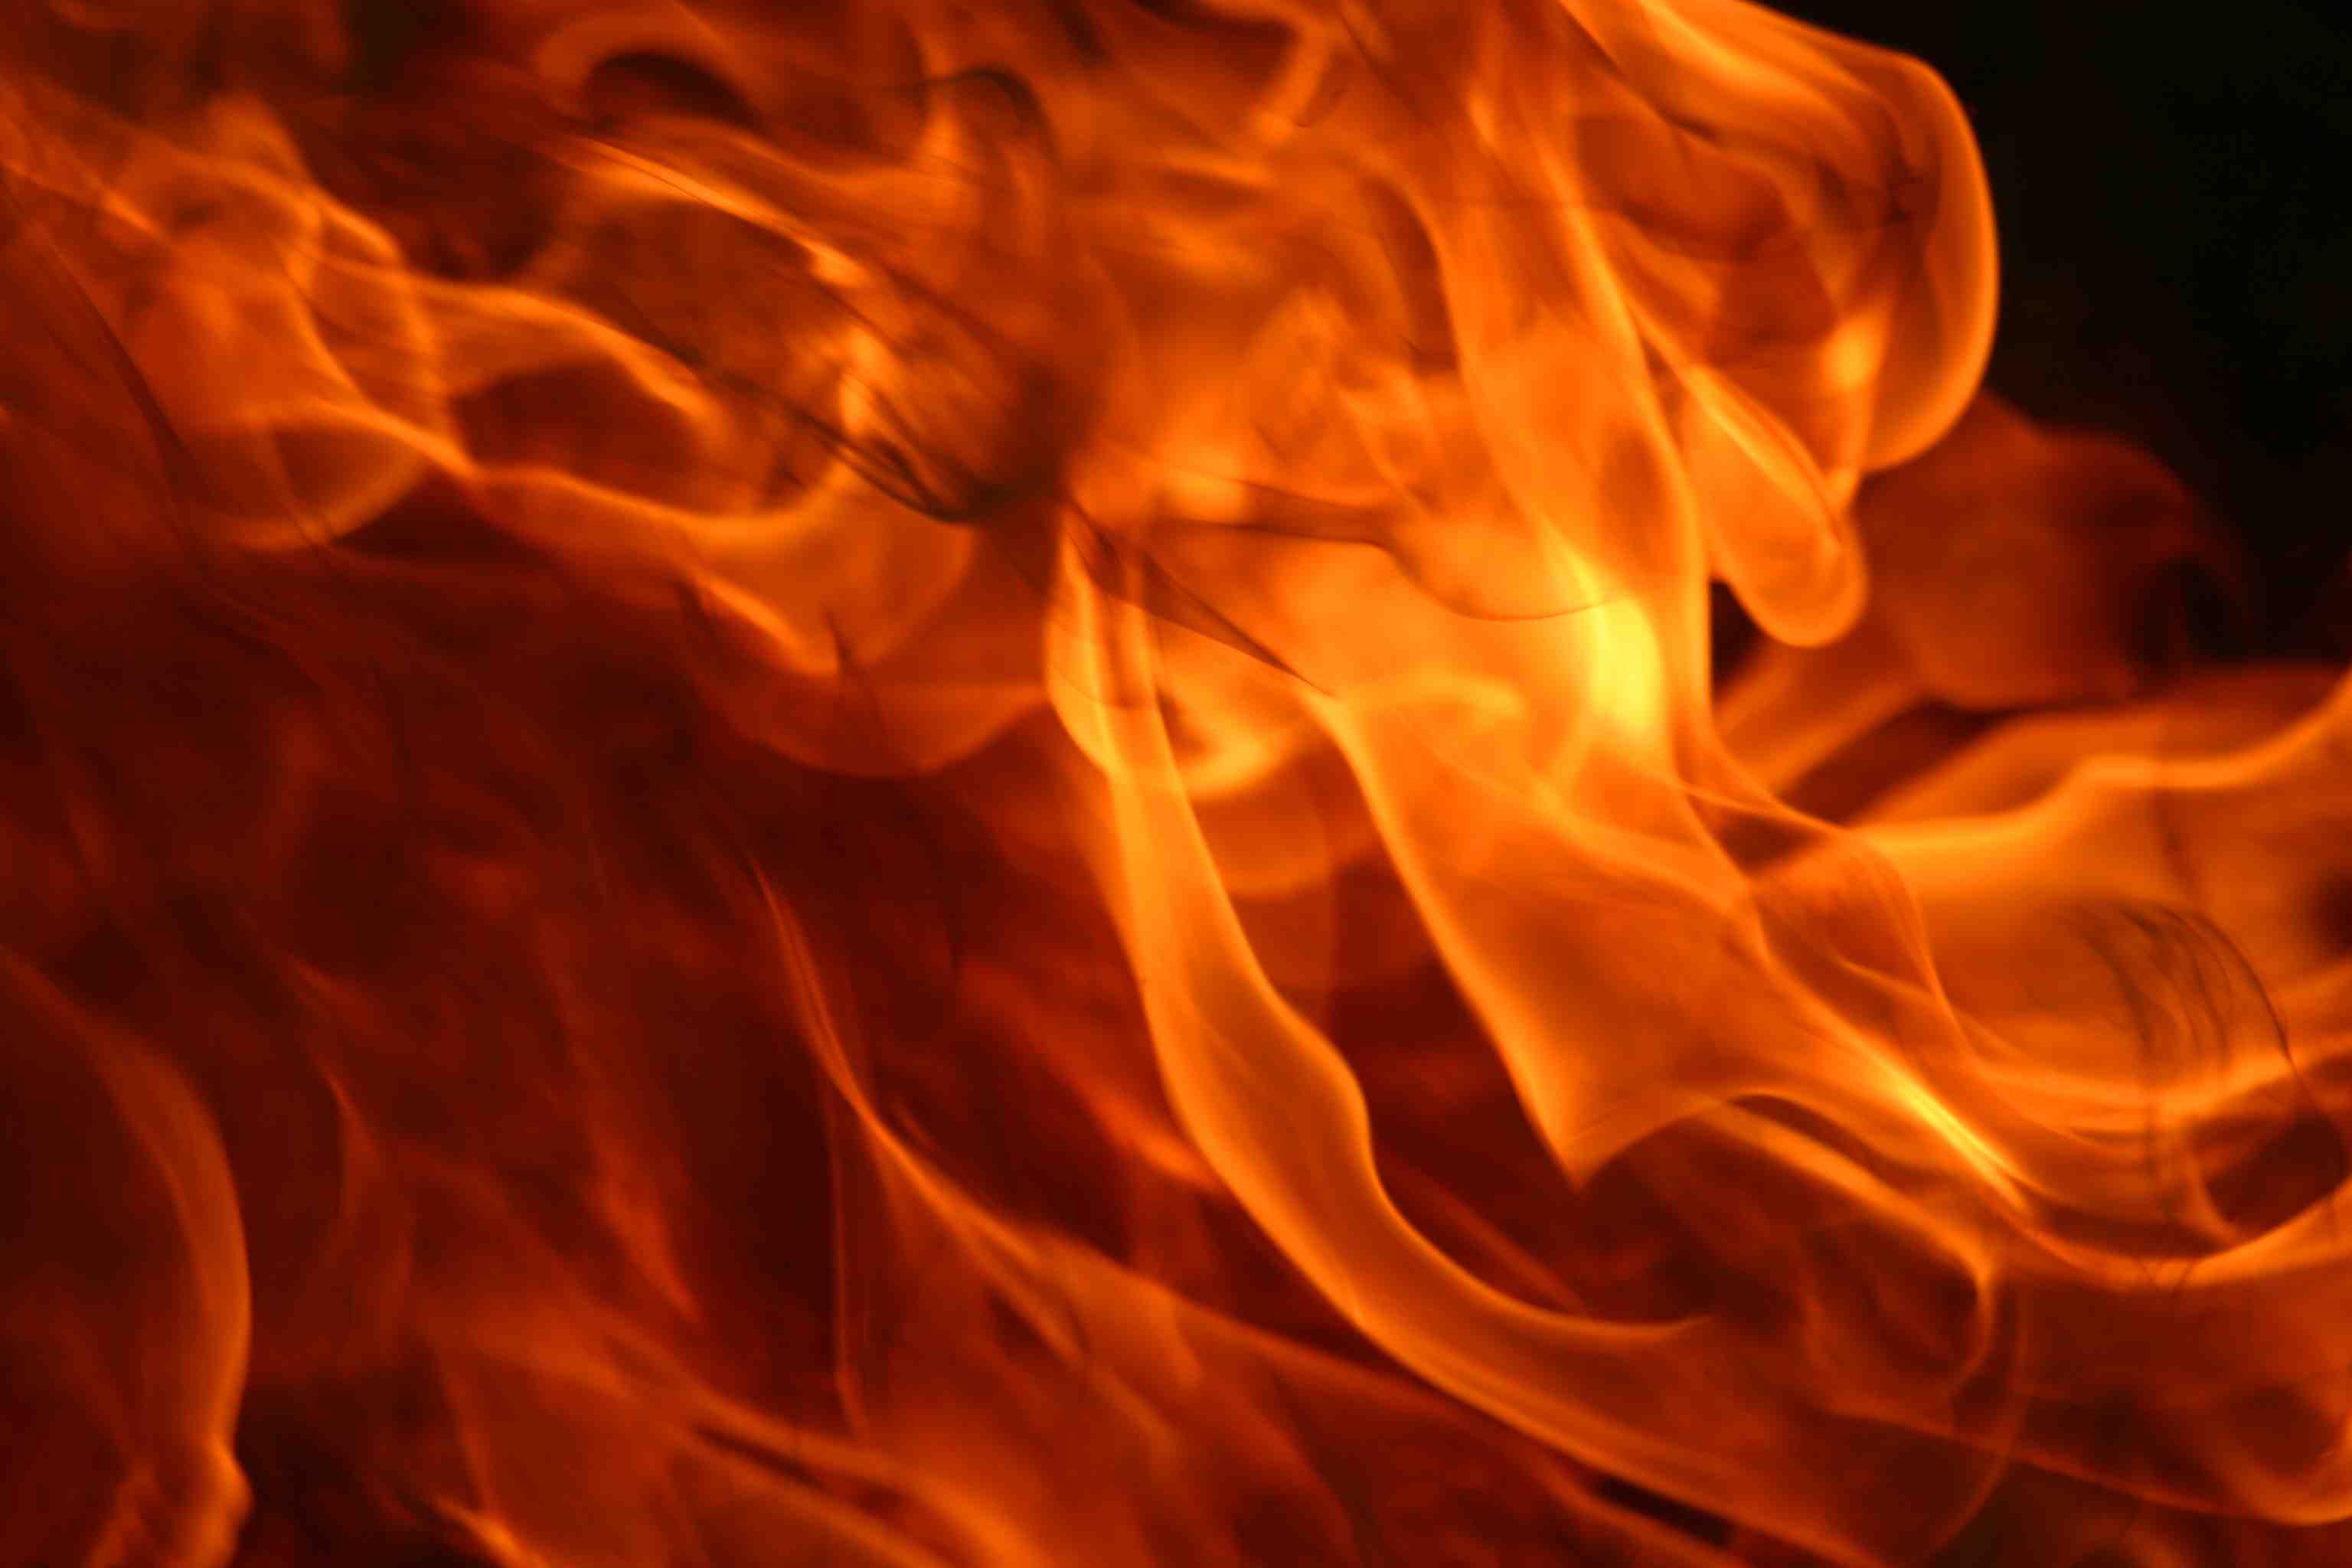 Burning Flame Wallpaper Image 3072x2048